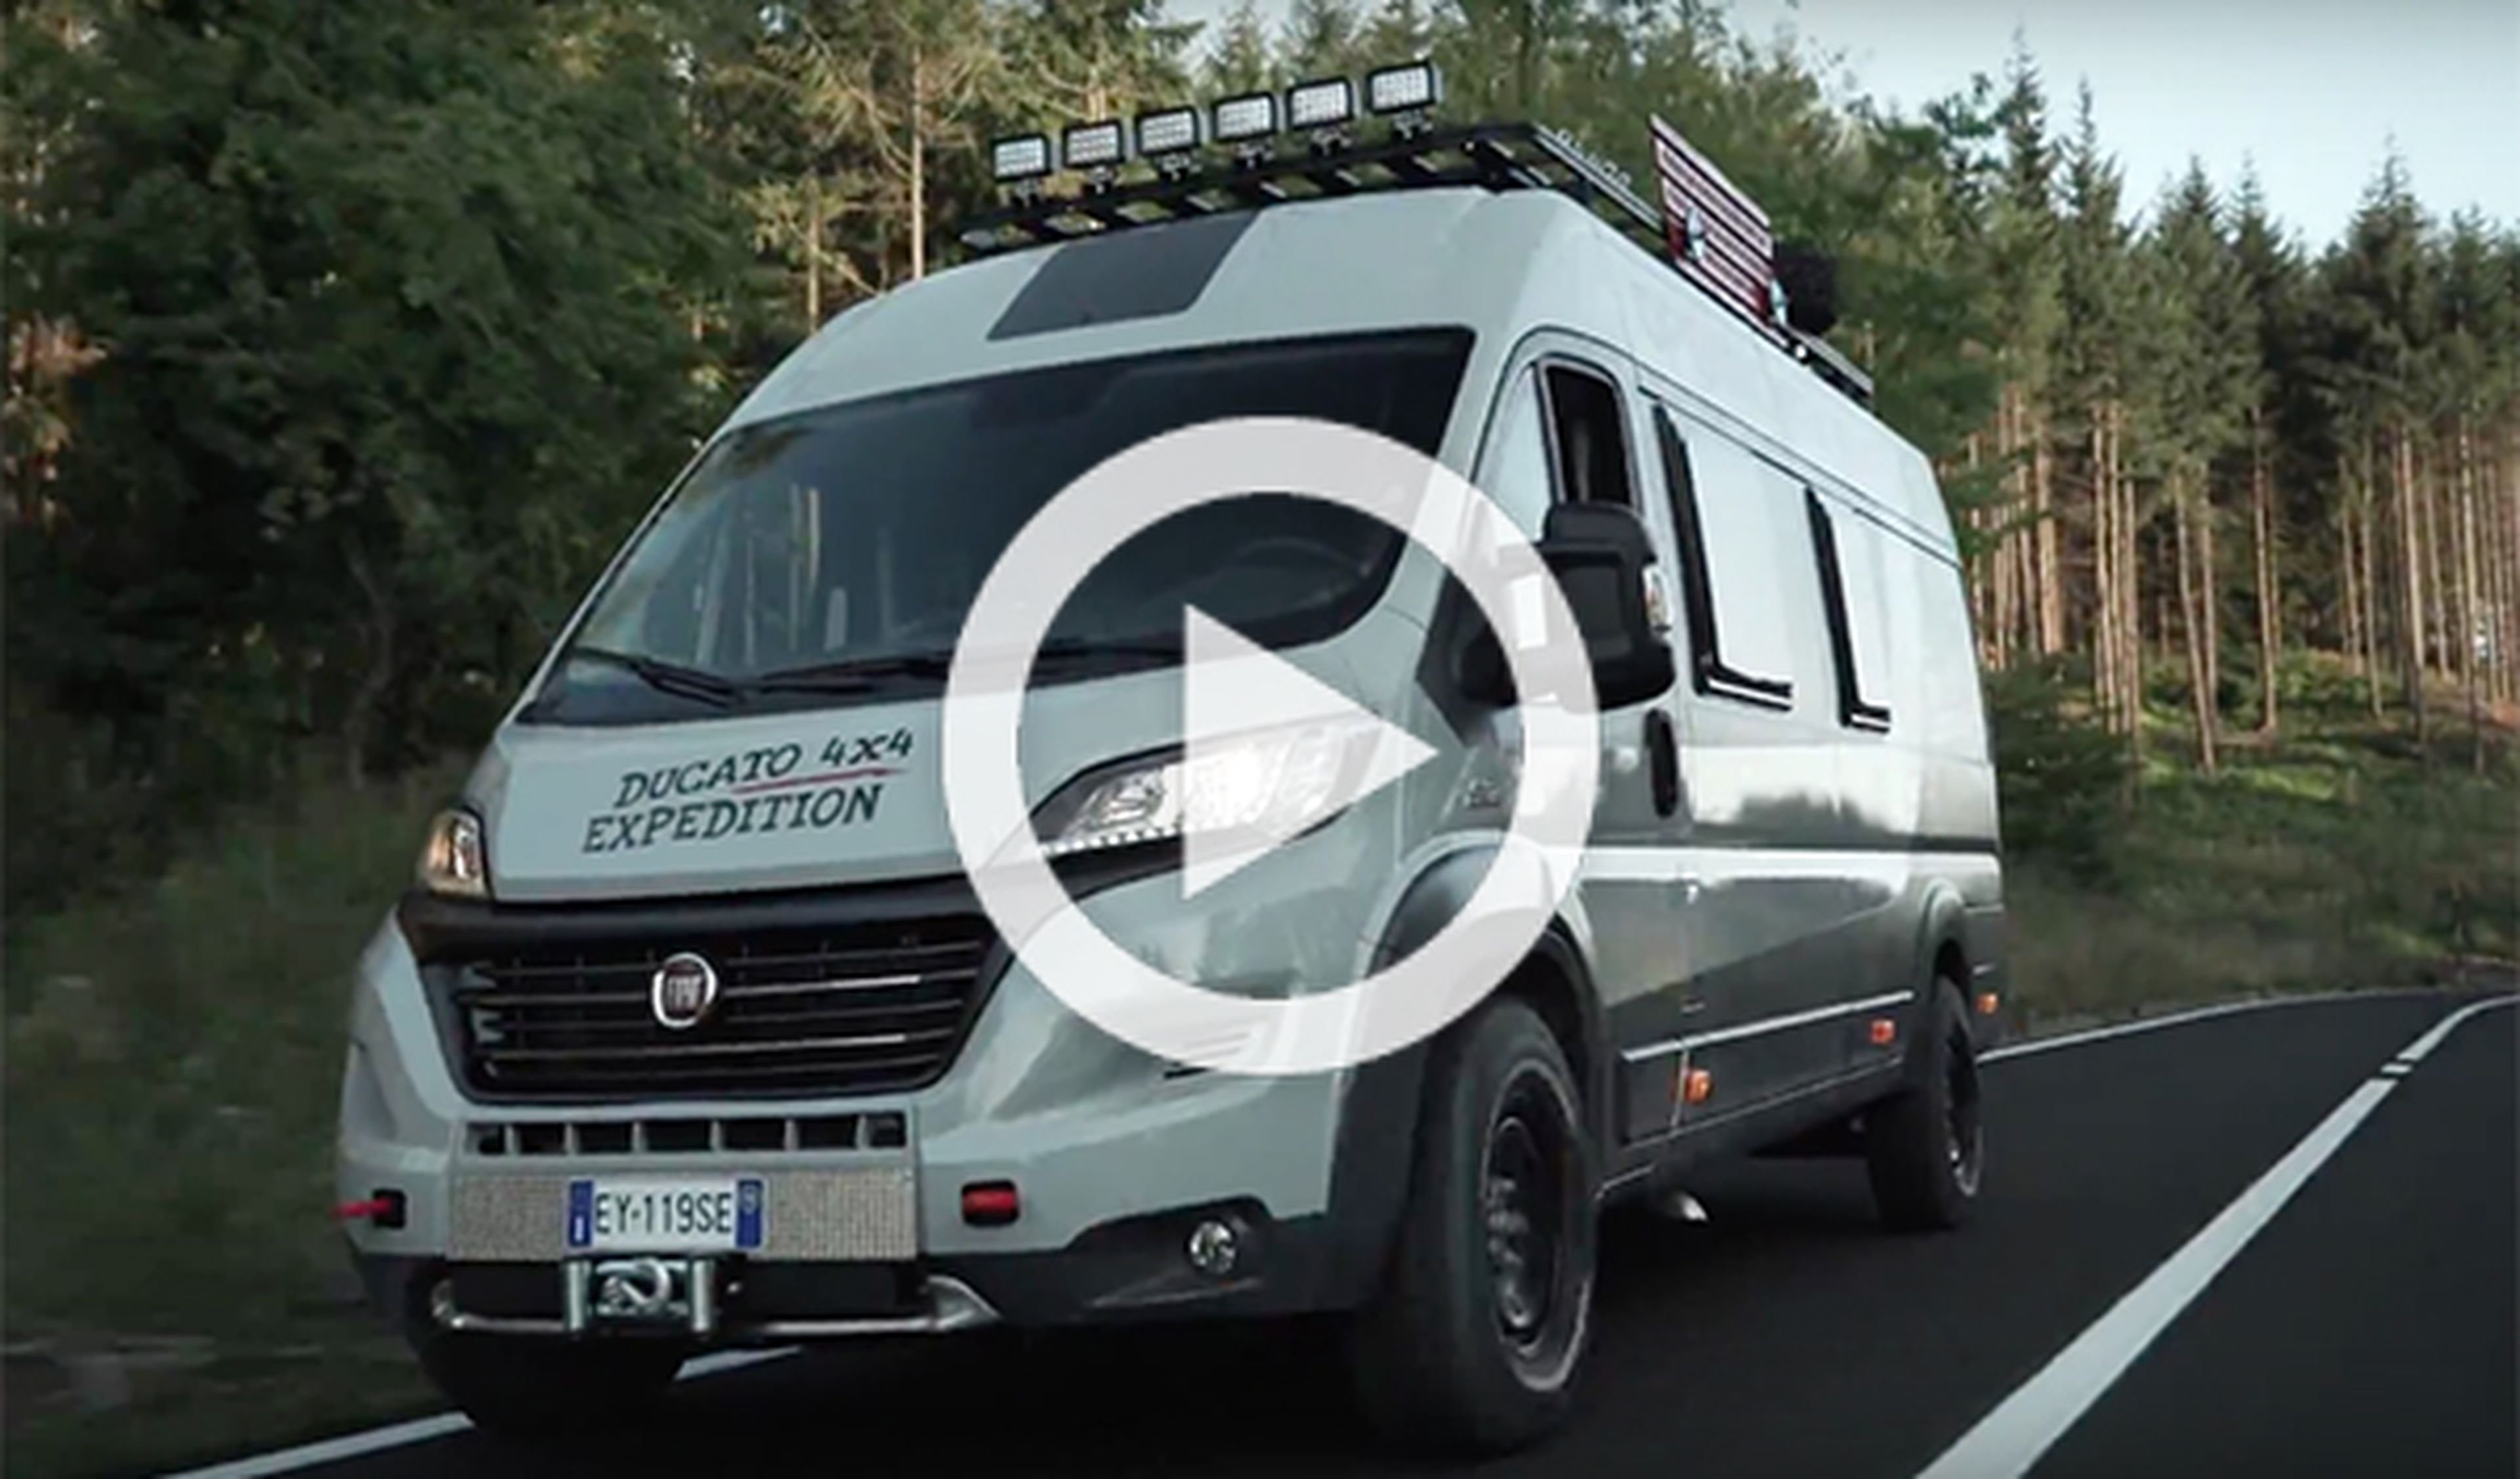 Fiat Ducato 4x4 Expedition, diseño sobre ruedas